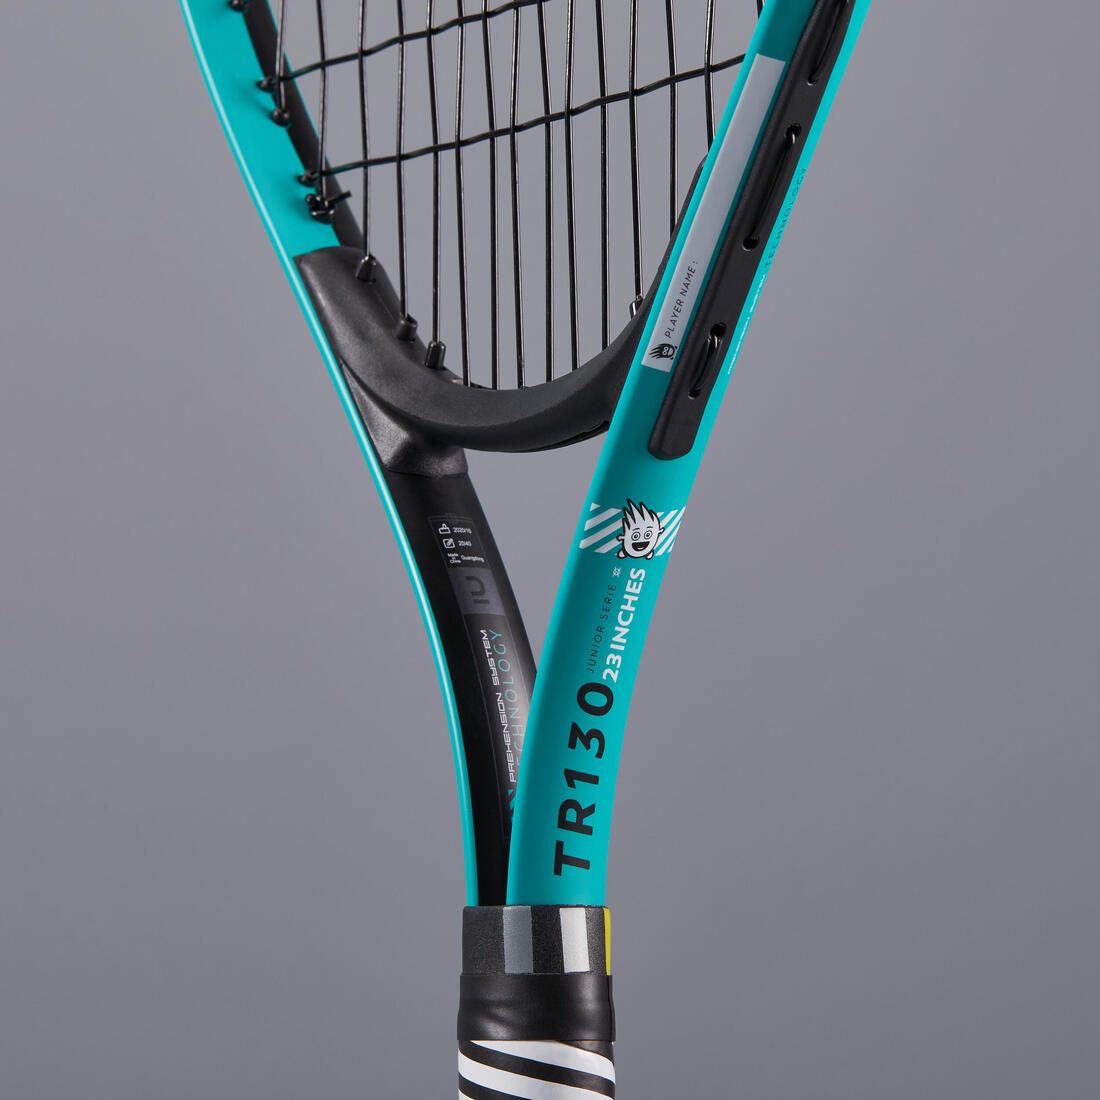 テニスラケット - ラケット(硬式用)